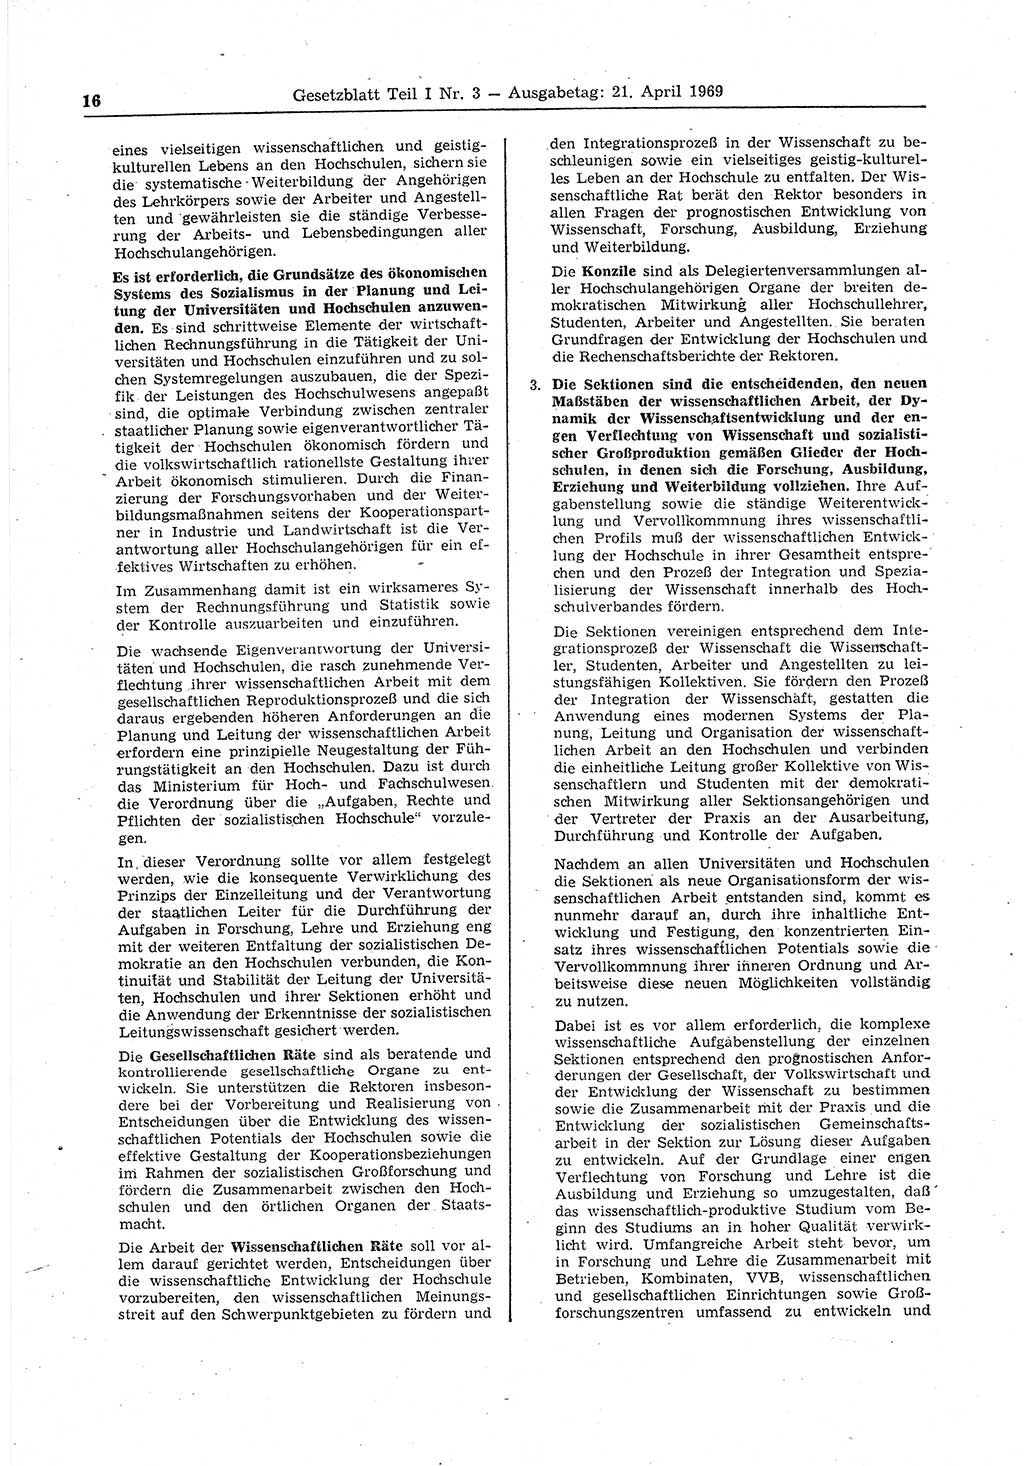 Gesetzblatt (GBl.) der Deutschen Demokratischen Republik (DDR) Teil Ⅰ 1969, Seite 16 (GBl. DDR Ⅰ 1969, S. 16)